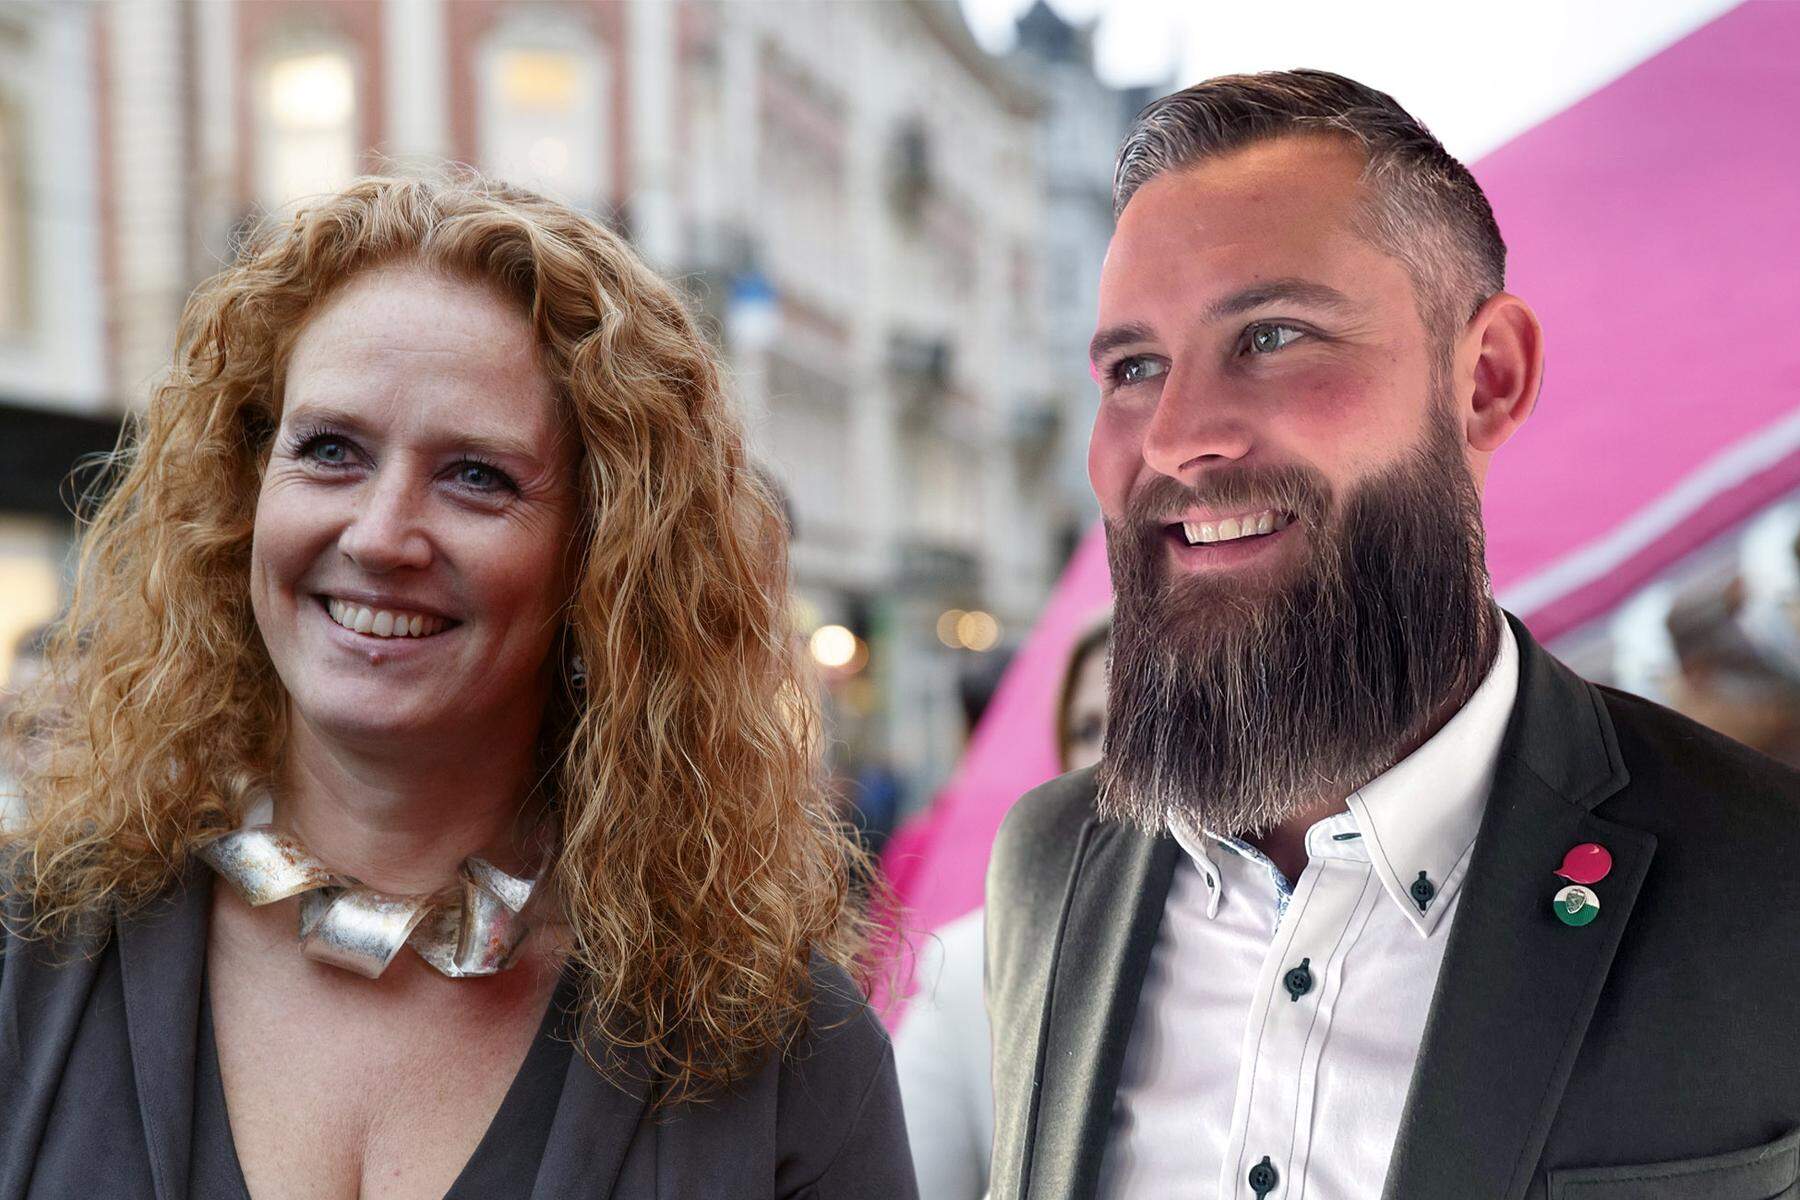 Listenerstellung gestartet: Steirisches Neos-Duo will als Team ins Parlament